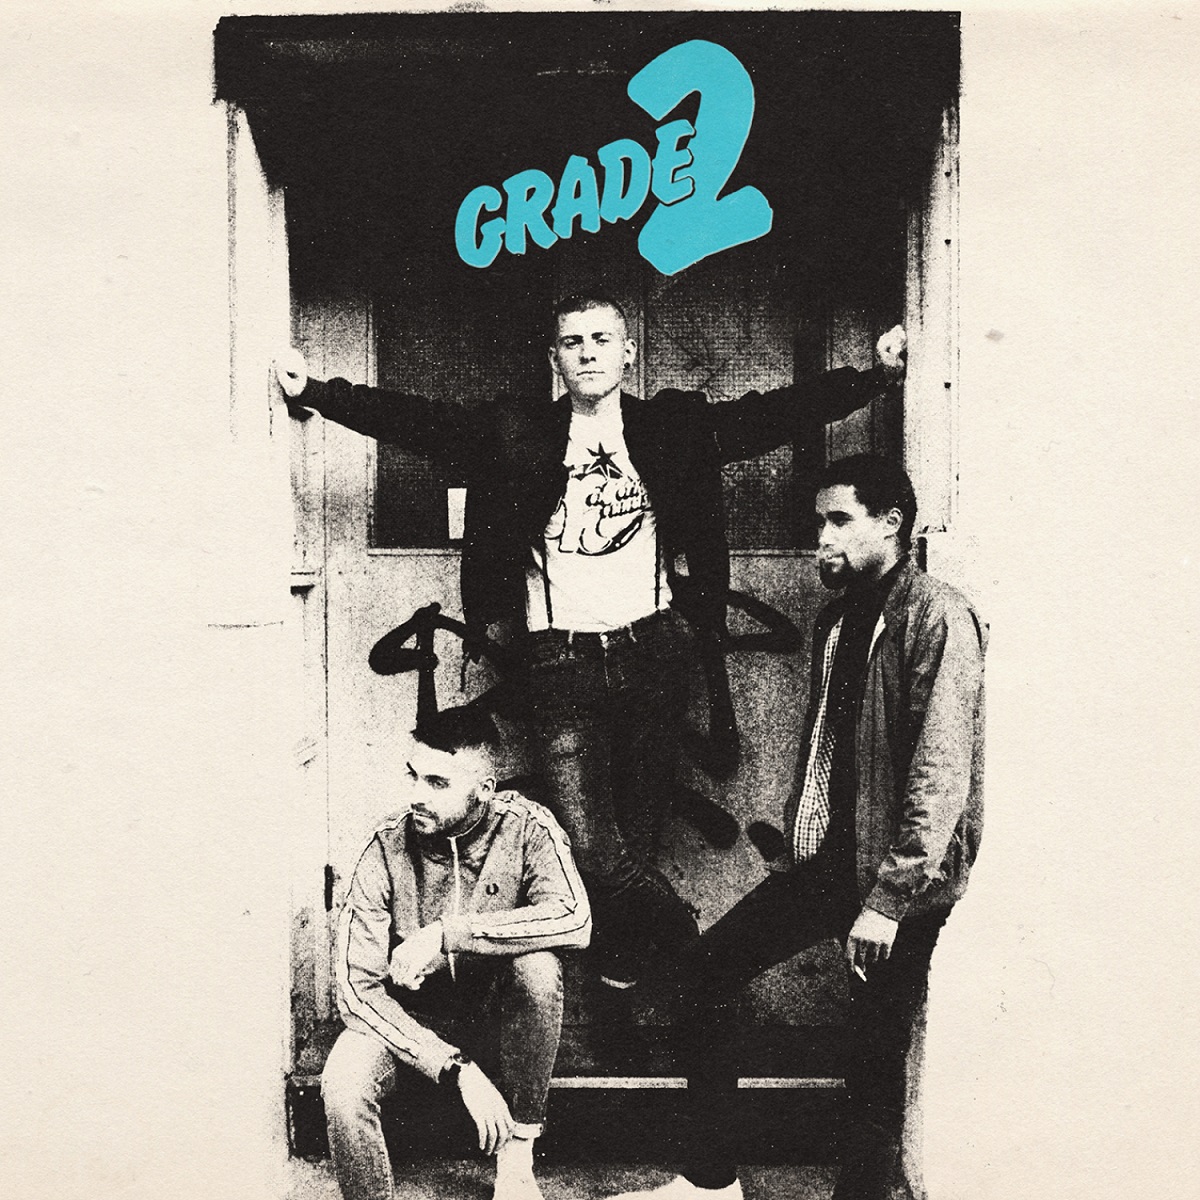 Grade 2 - s/t Albumcover